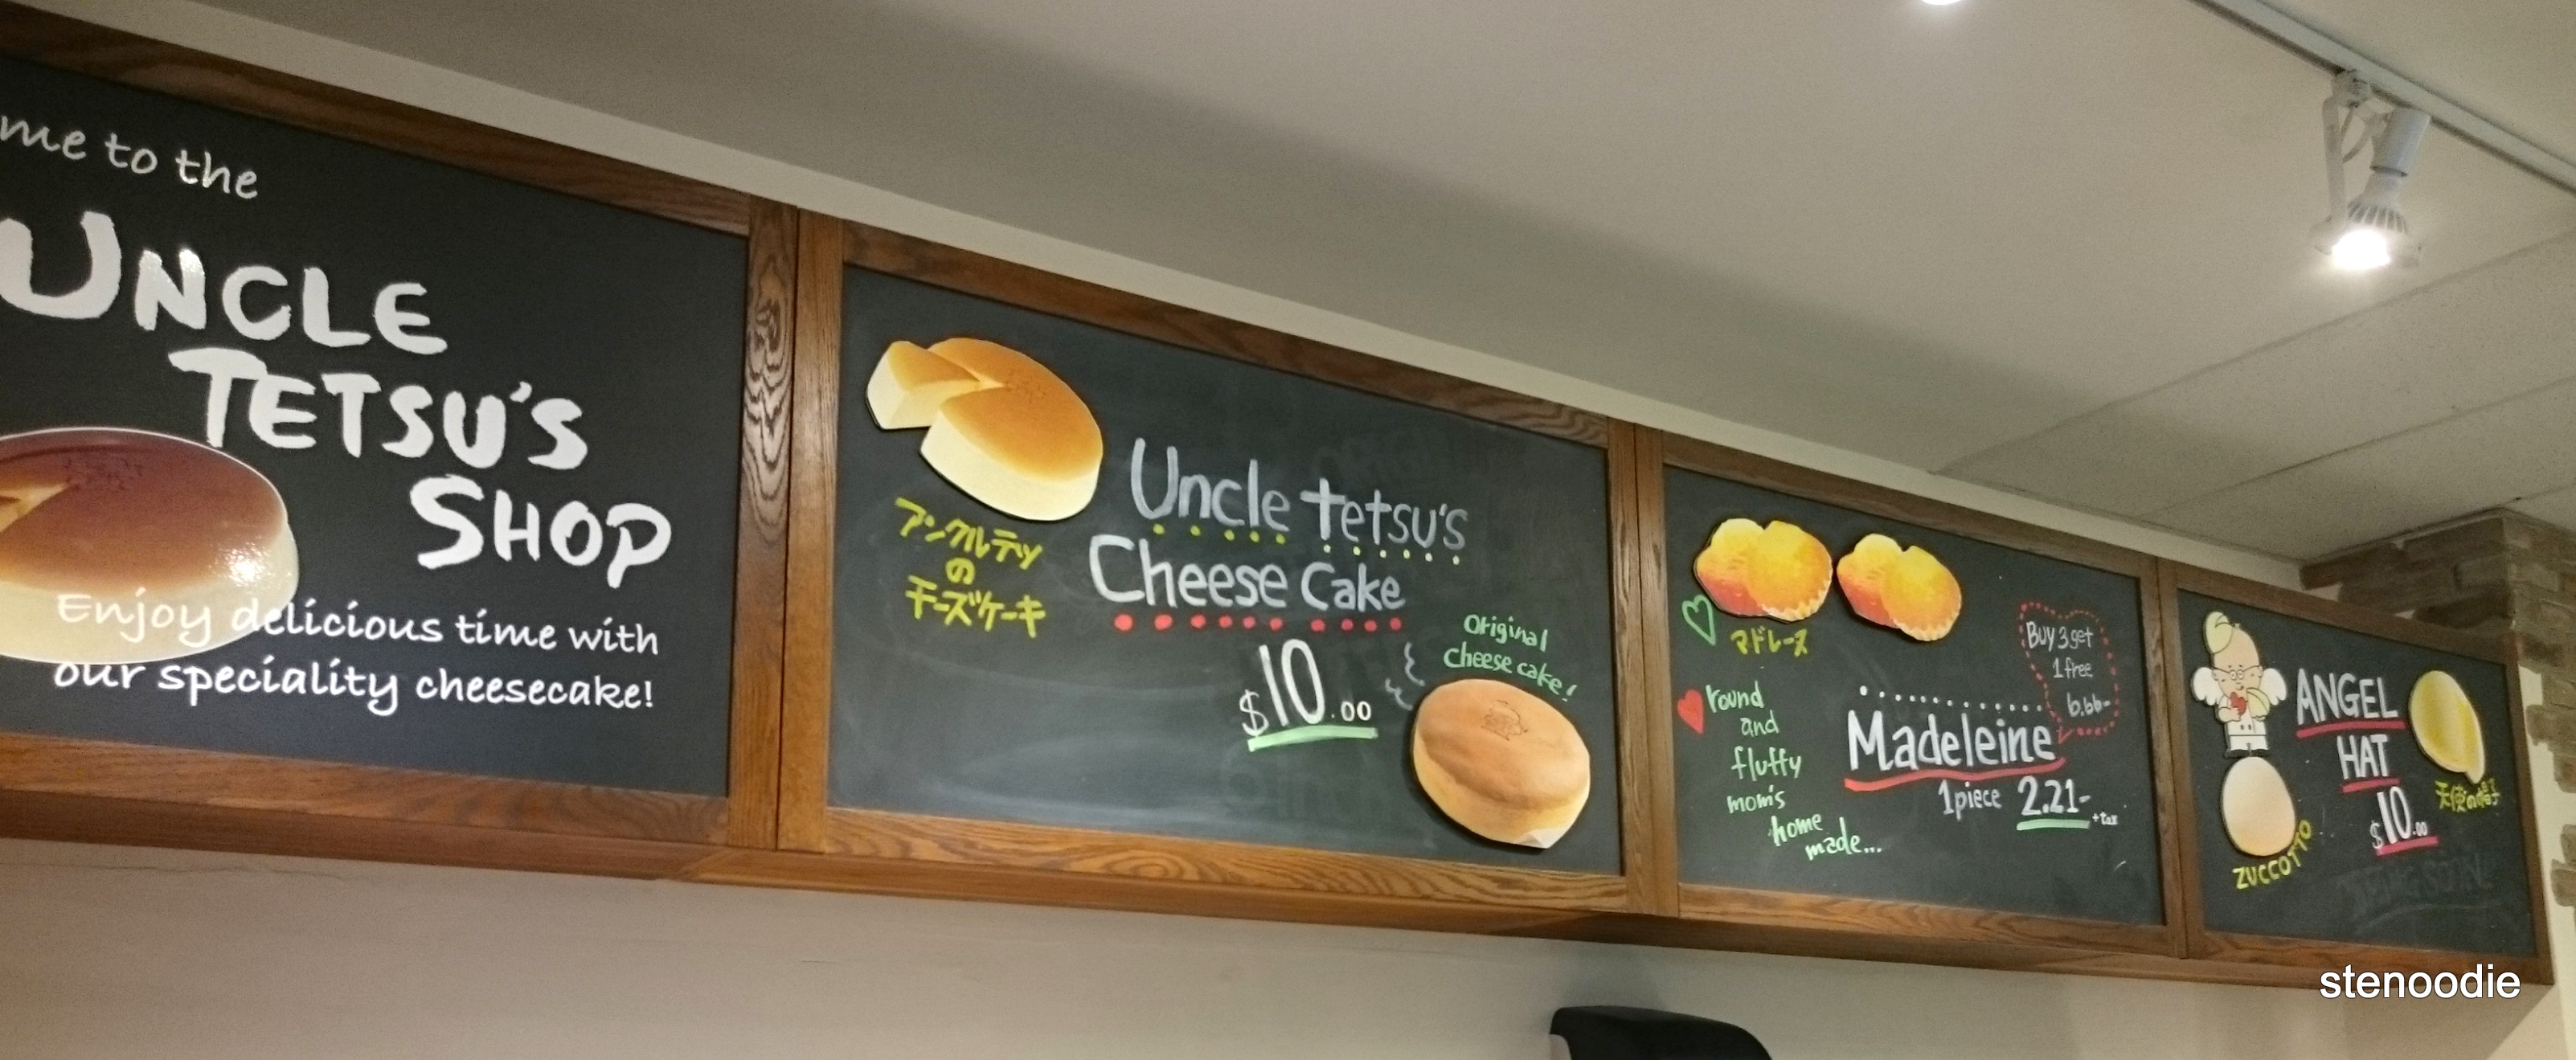 Uncle Tetsu's Shop menu 